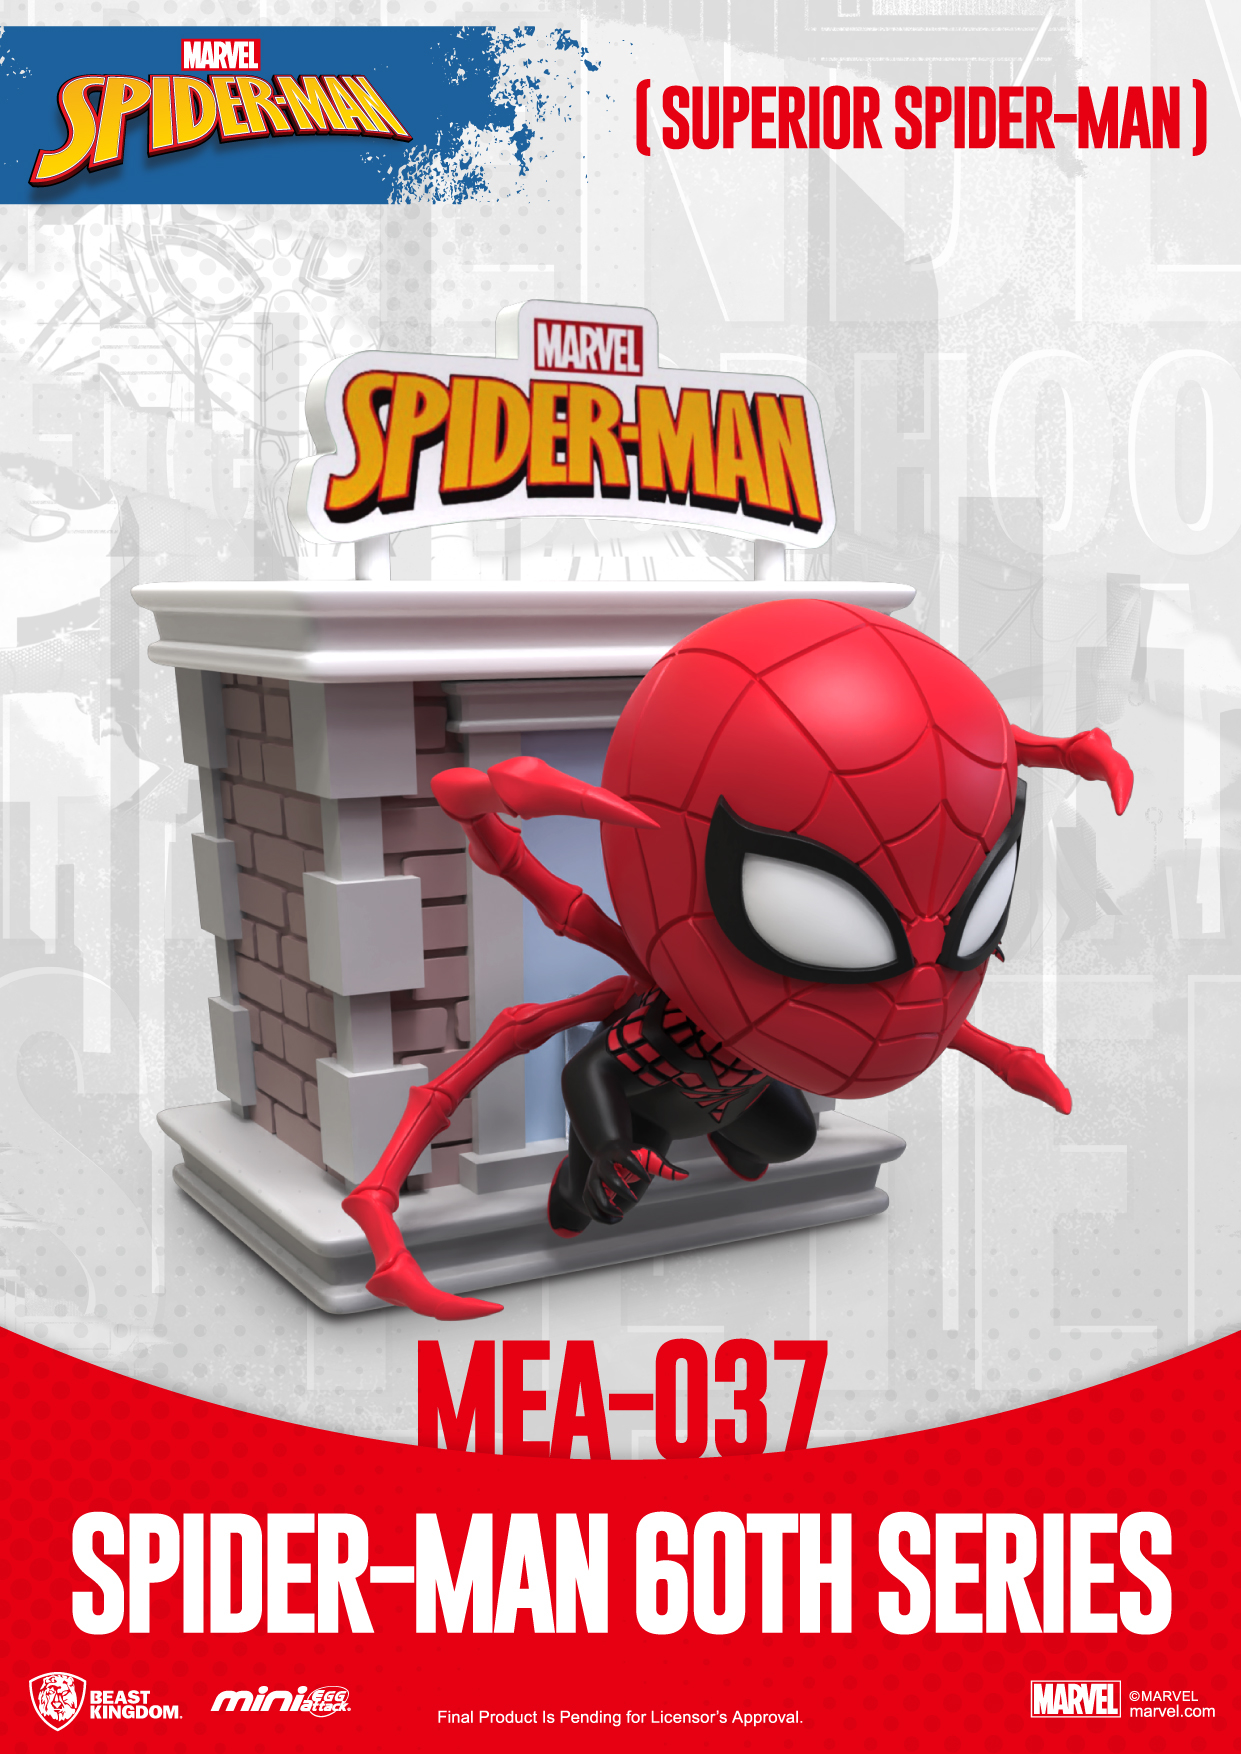 Spider-Man 60th anniversary MEA-037 Mini-Egg Attack Superior Spider-Man